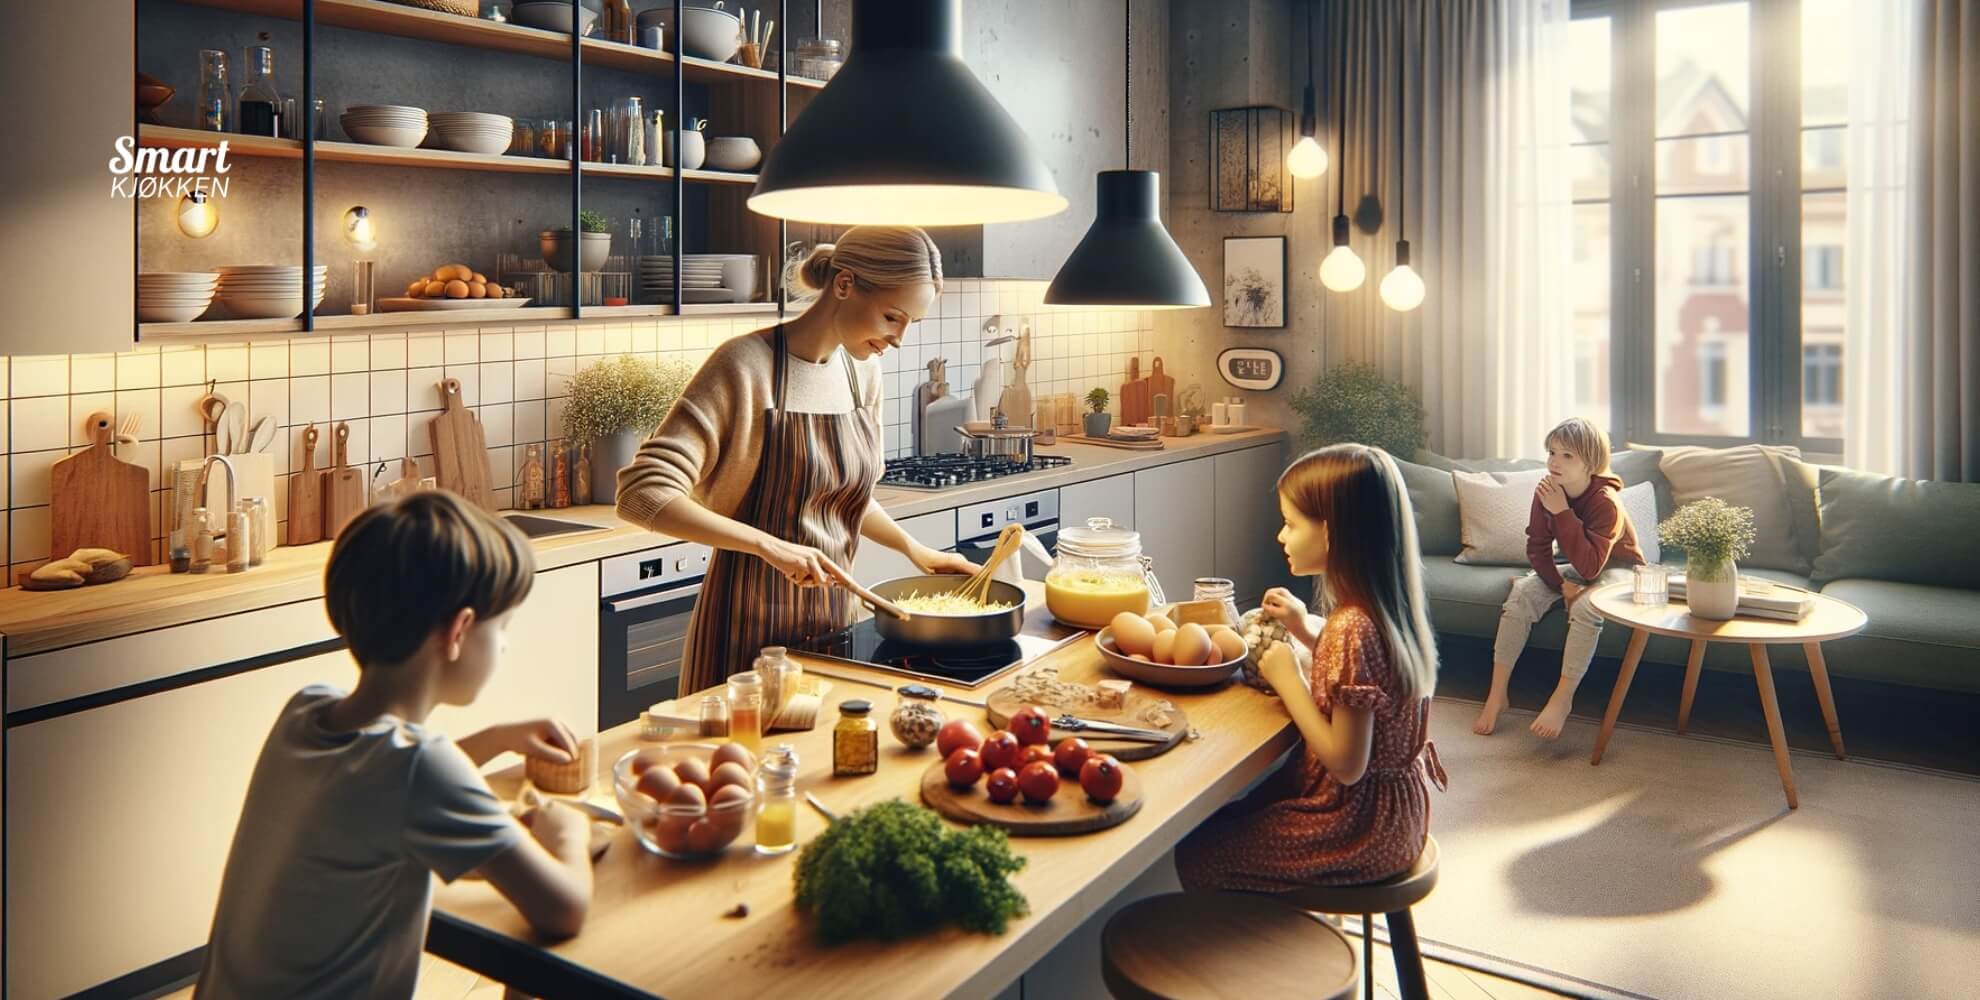 Bilde av mor som lager middag for barn.